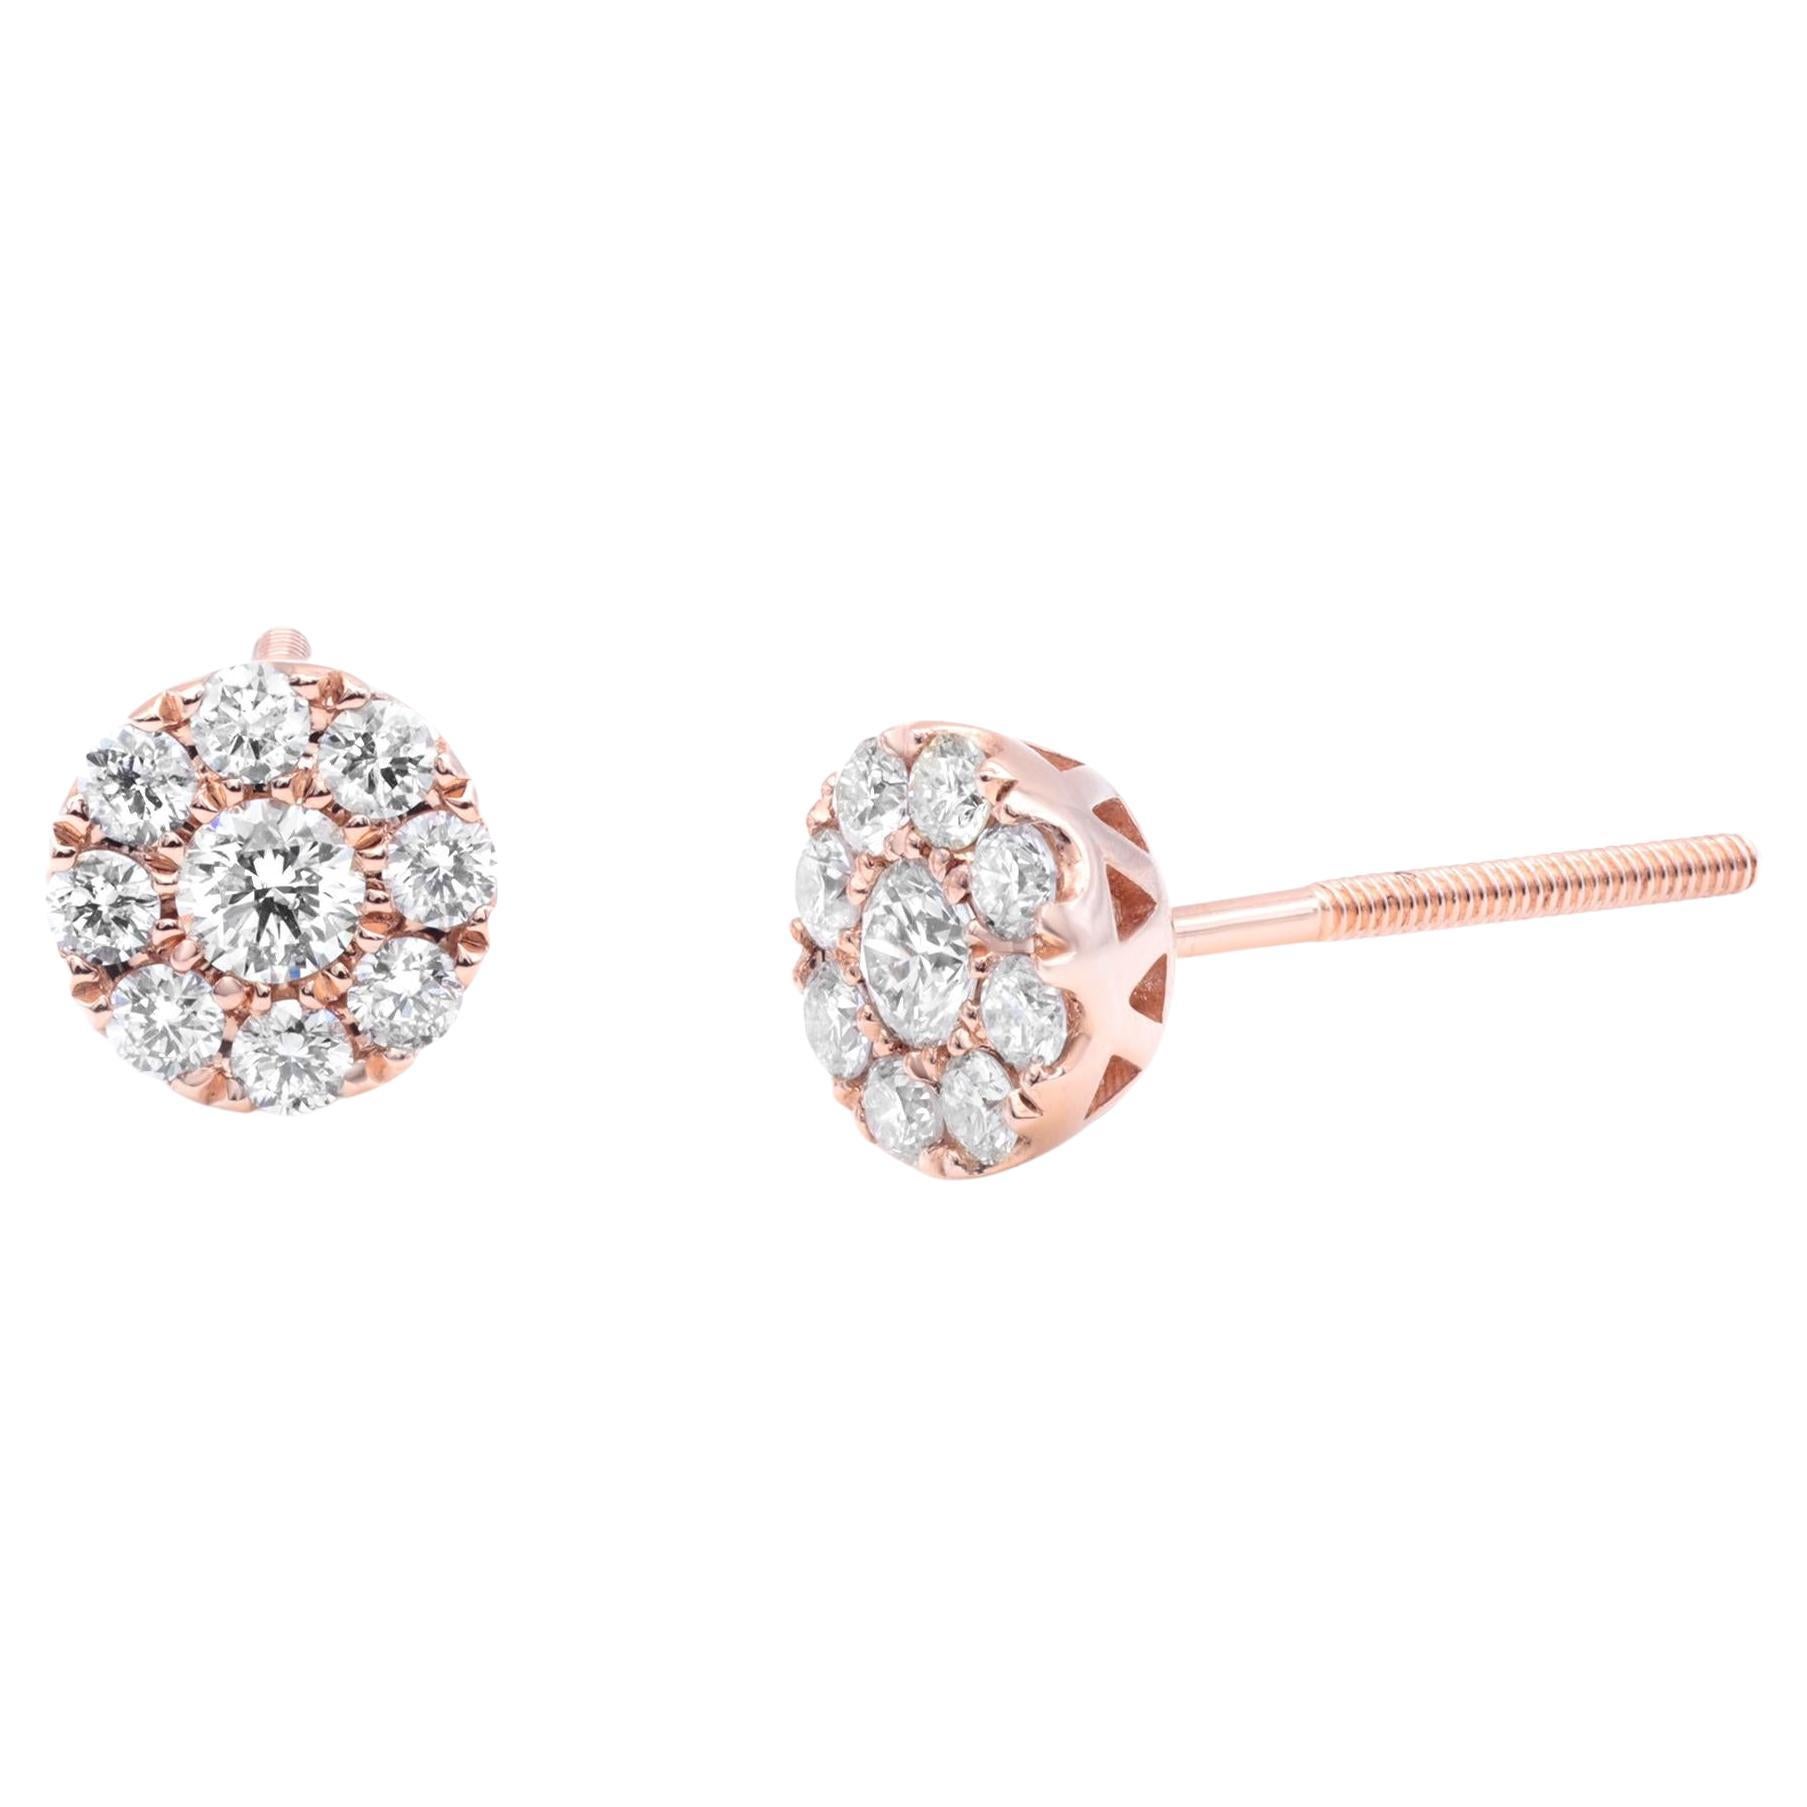 Rachel Koen Diamond Frame Stud Earrings in 14K Rose Gold 0.44cttw For Sale